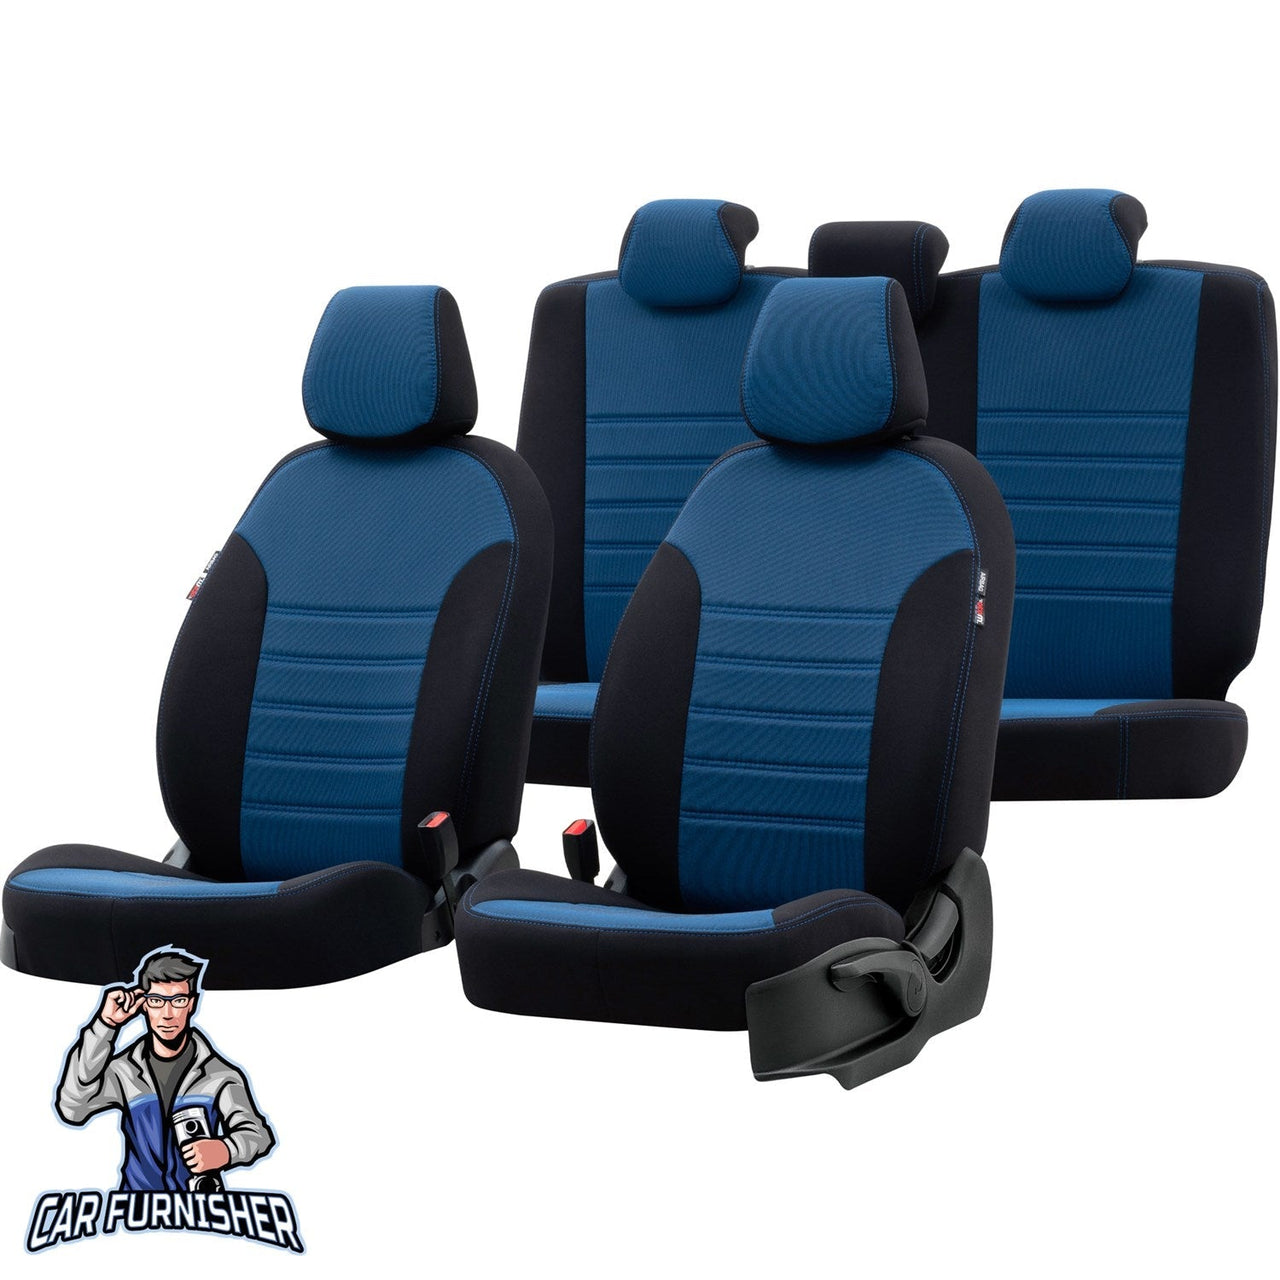 Bmw X3 Seat Cover Original Jacquard Design Blue Jacquard Fabric